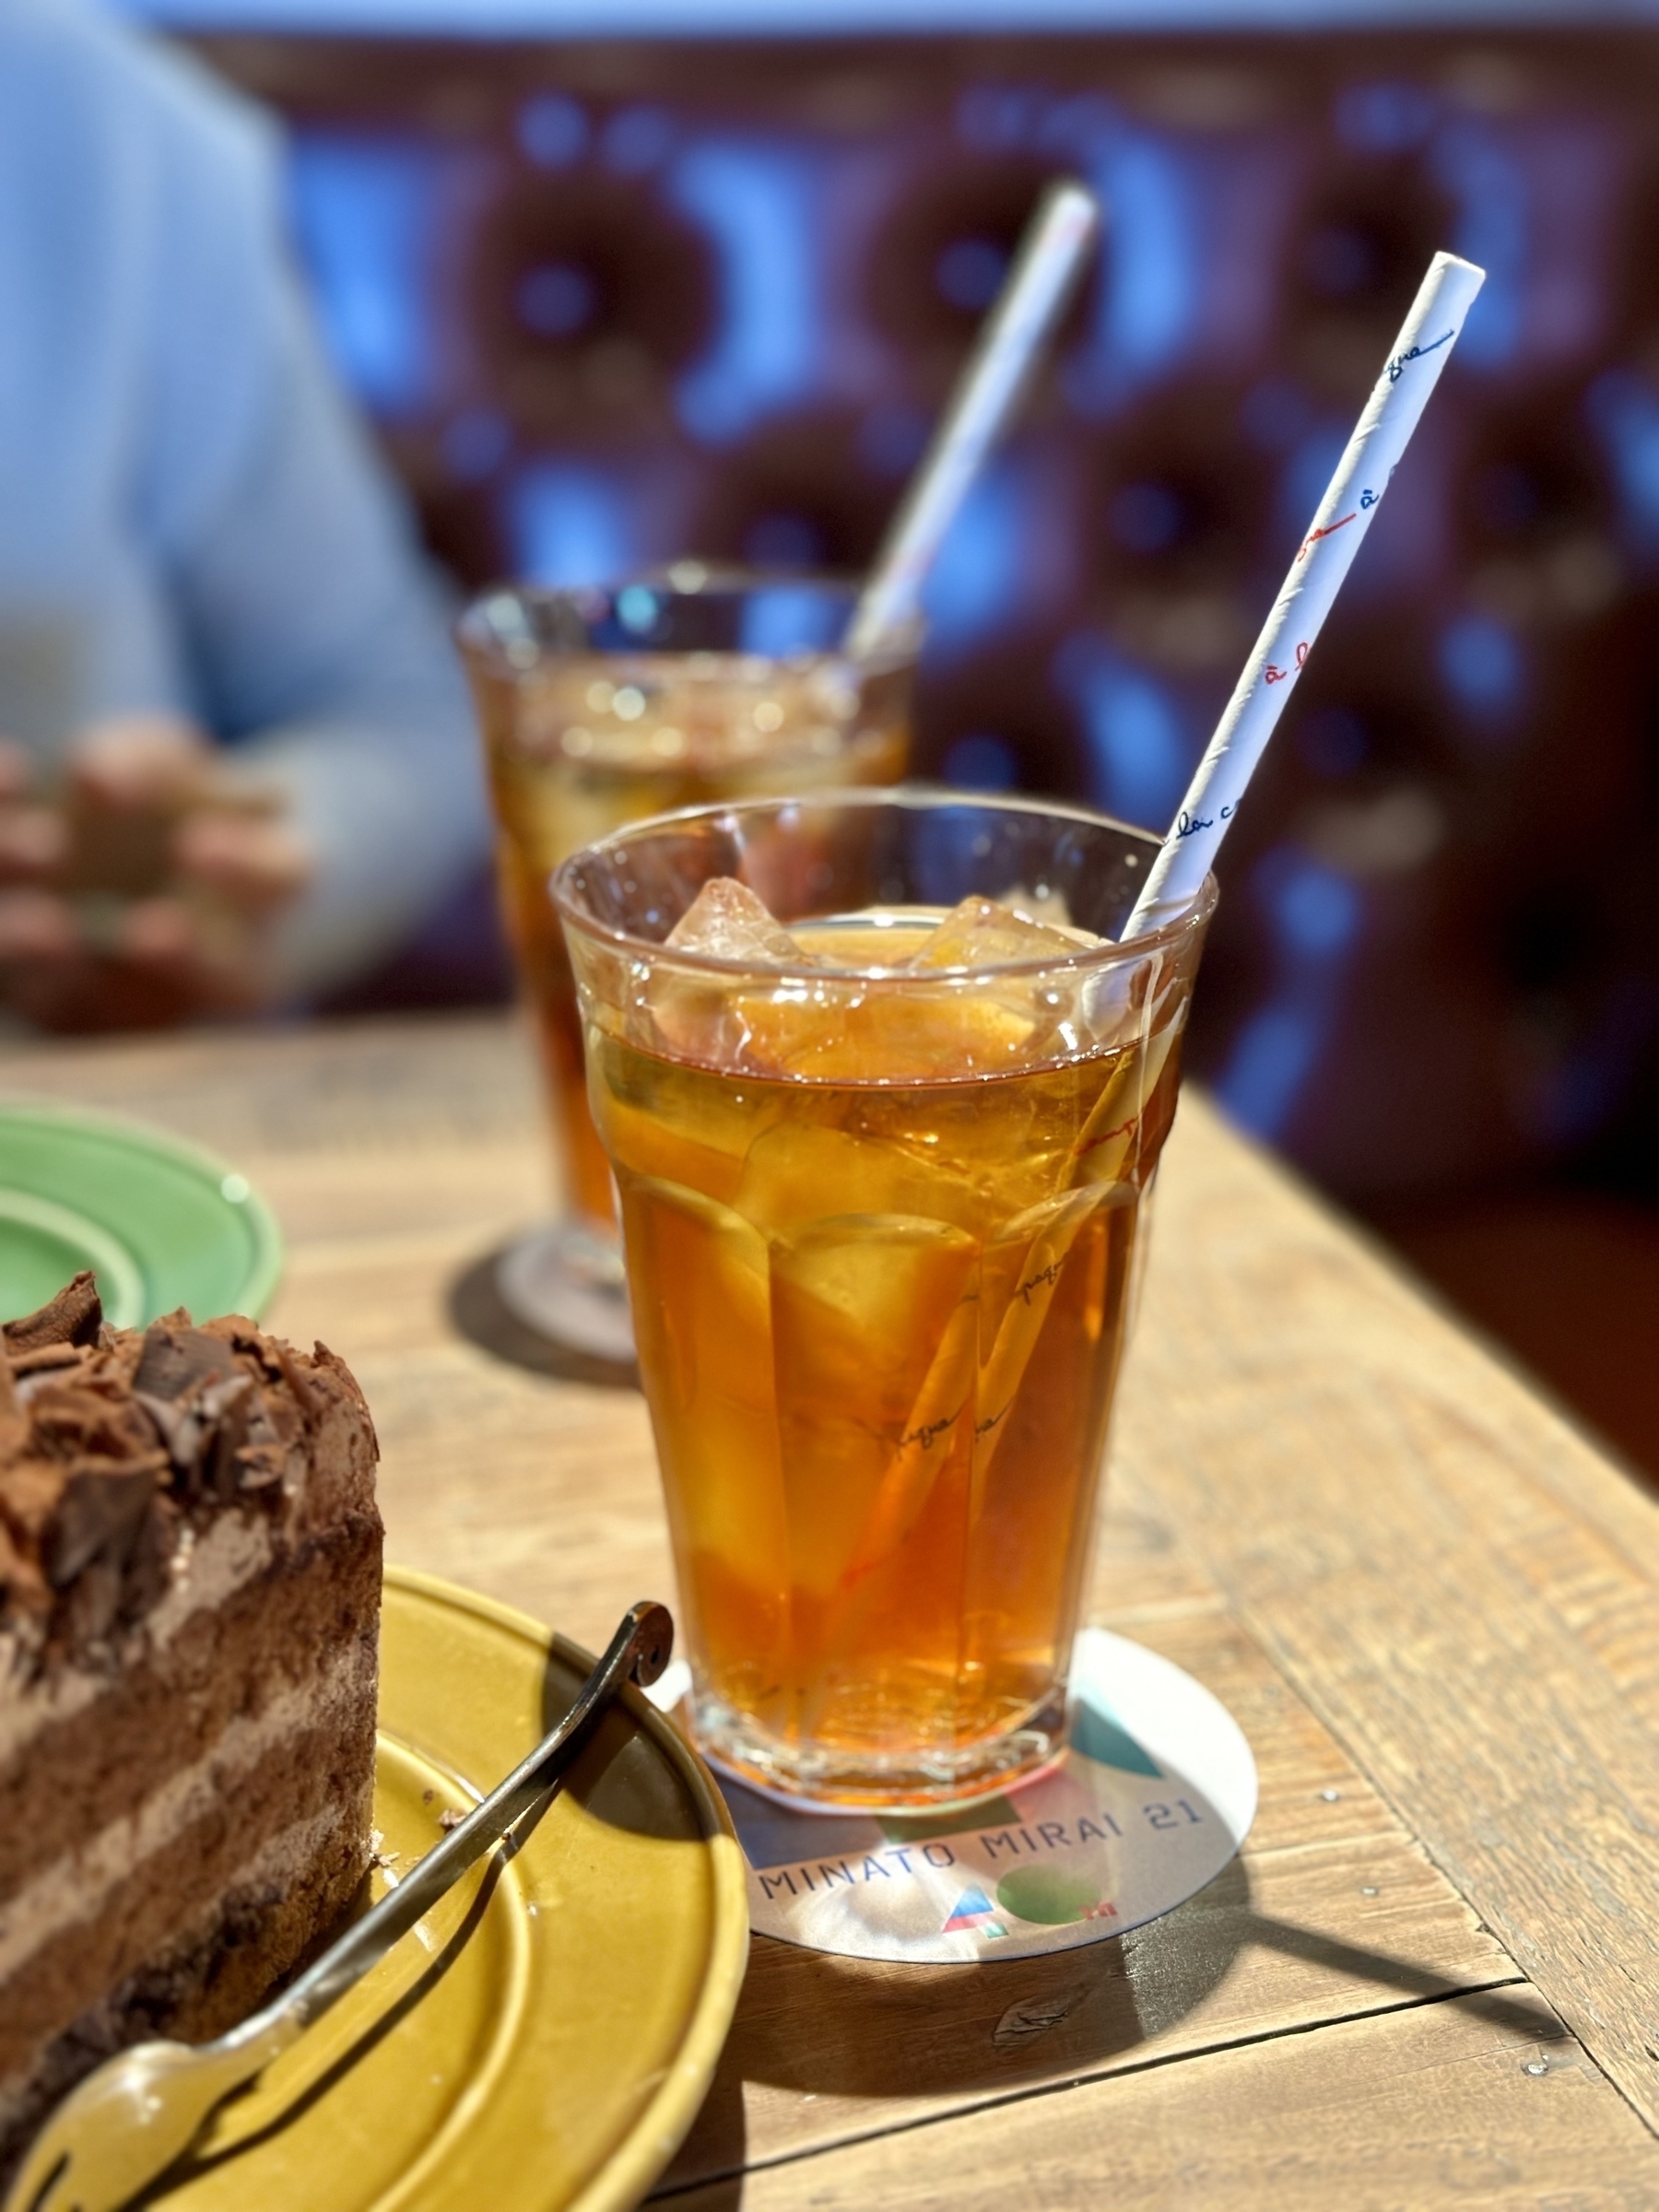 Photo of iced tea and cake from a café in Yokohama Japan